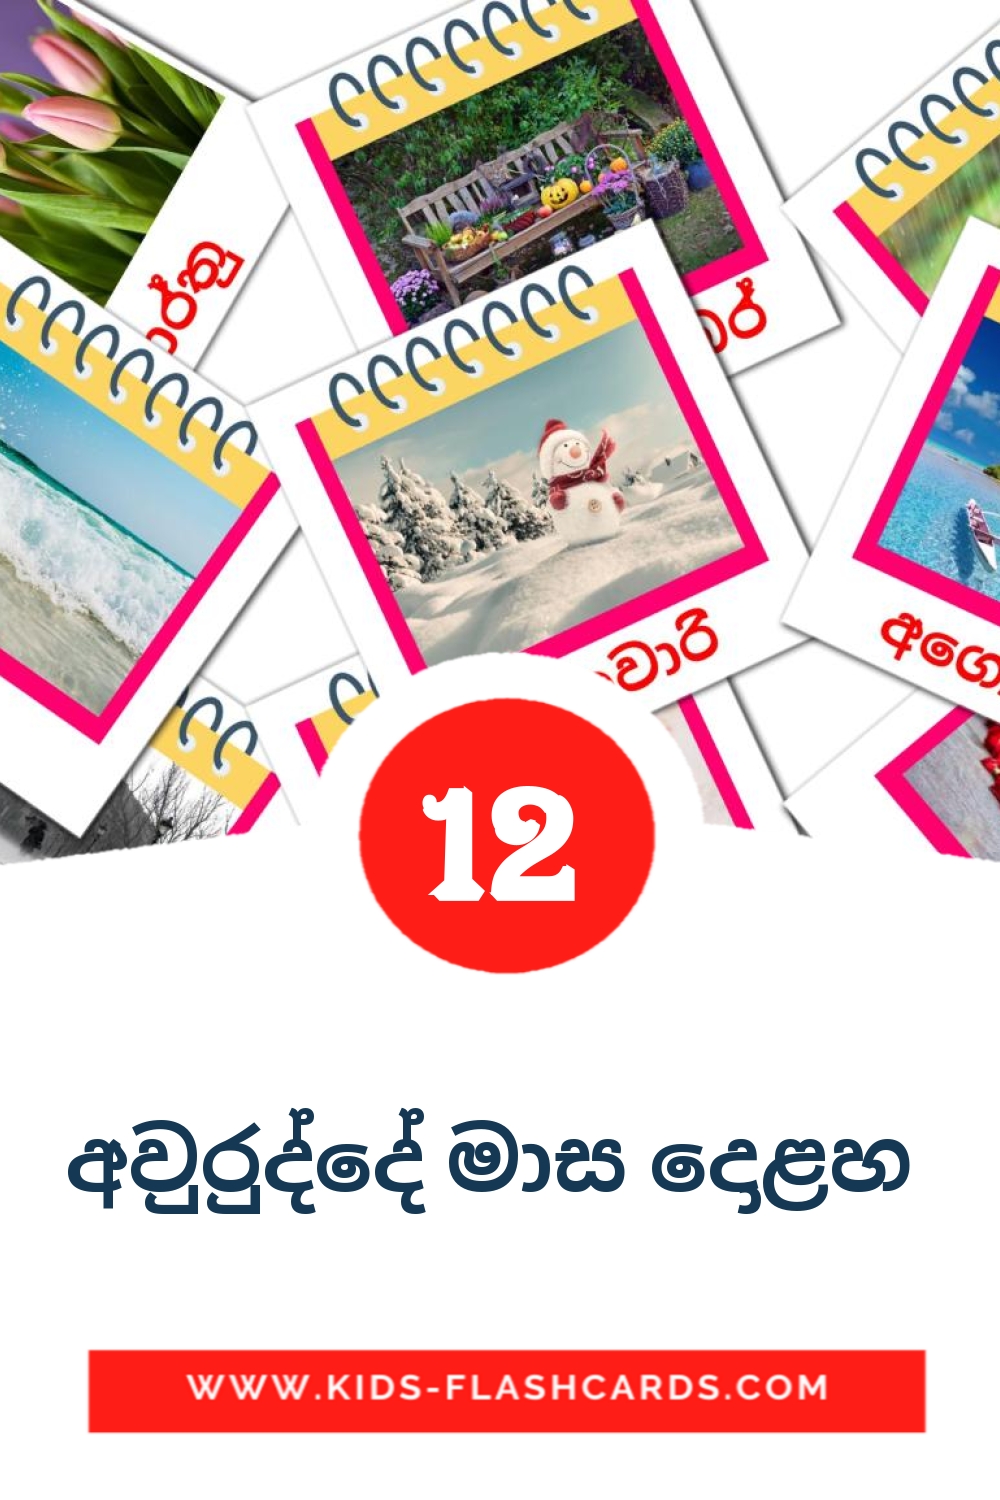 12 cartes illustrées de අවුරුද්දේ මාස දොළහ  pour la maternelle en cinghalais